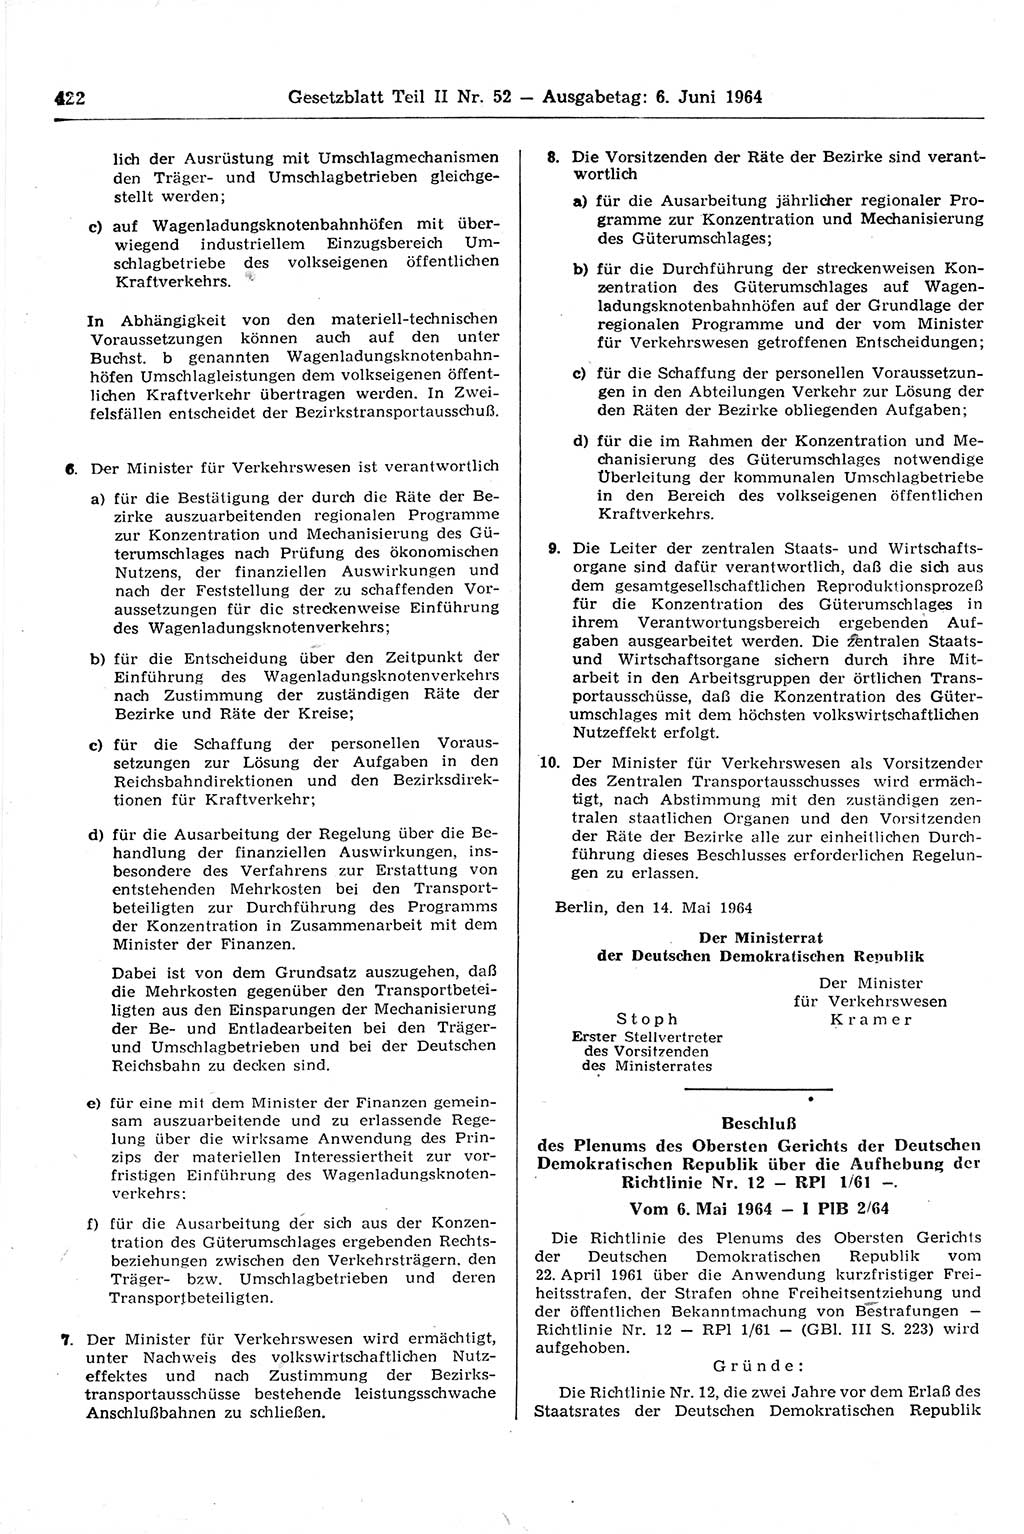 Gesetzblatt (GBl.) der Deutschen Demokratischen Republik (DDR) Teil ⅠⅠ 1964, Seite 422 (GBl. DDR ⅠⅠ 1964, S. 422)